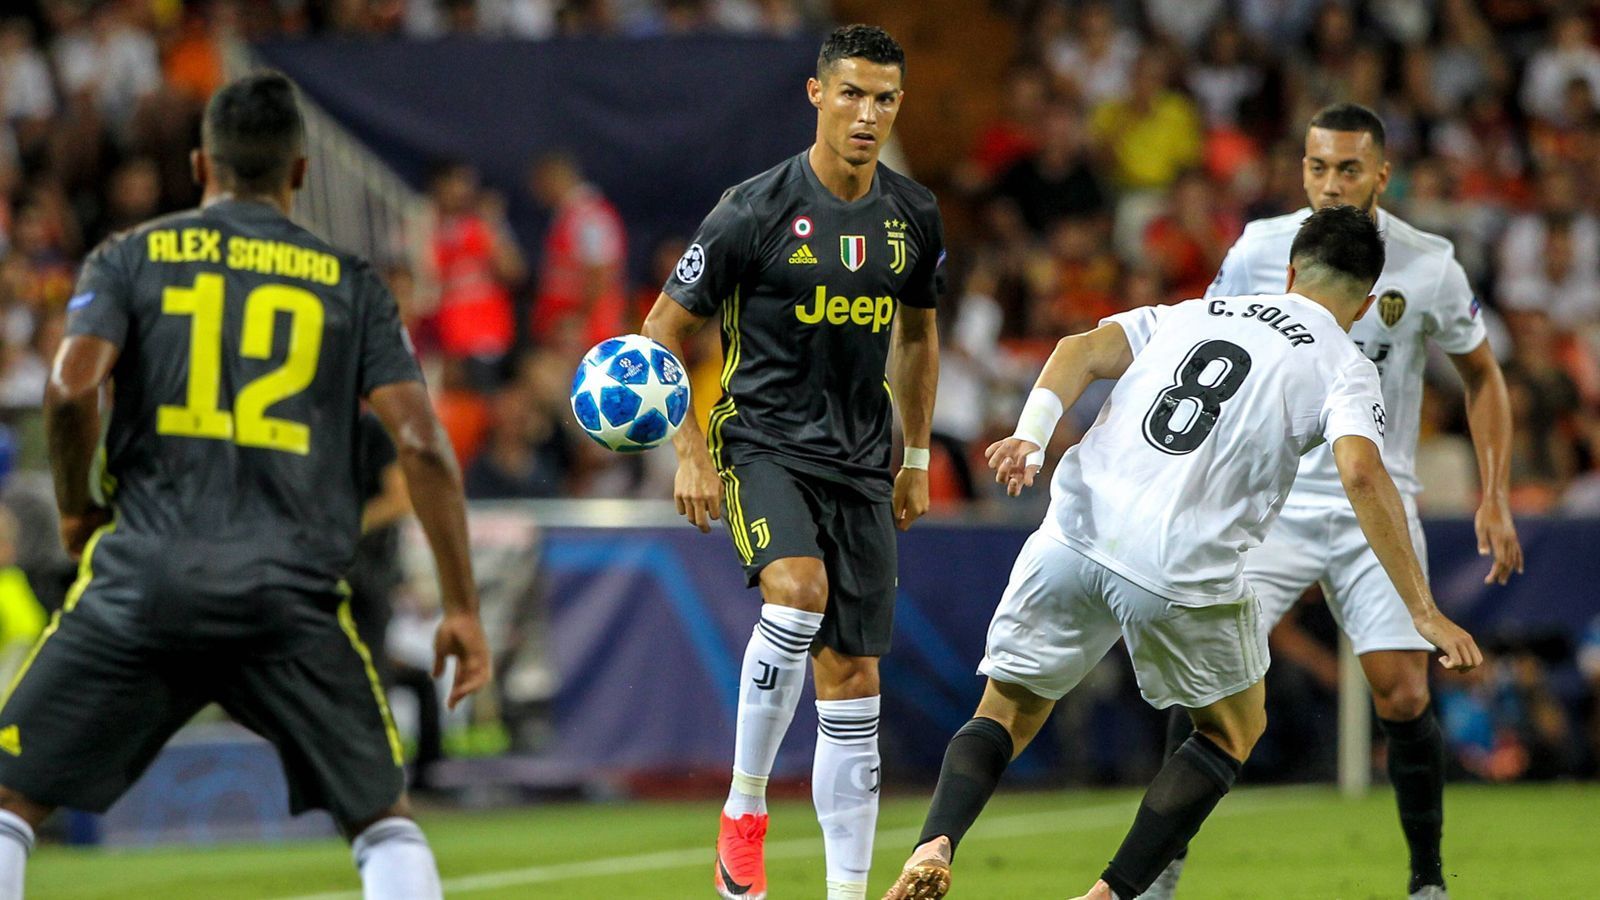 
                <strong>Cristiano Ronaldo sieht Rot</strong><br>
                Für das erste Gruppenspiel in der Königsklasse reiste die "Alte Dame" nach Valencia. Nach seinen beiden Debüt-Toren am Wochenende in der Serie A wollte Ronaldo nun in der Champions League nachlegen. 
              